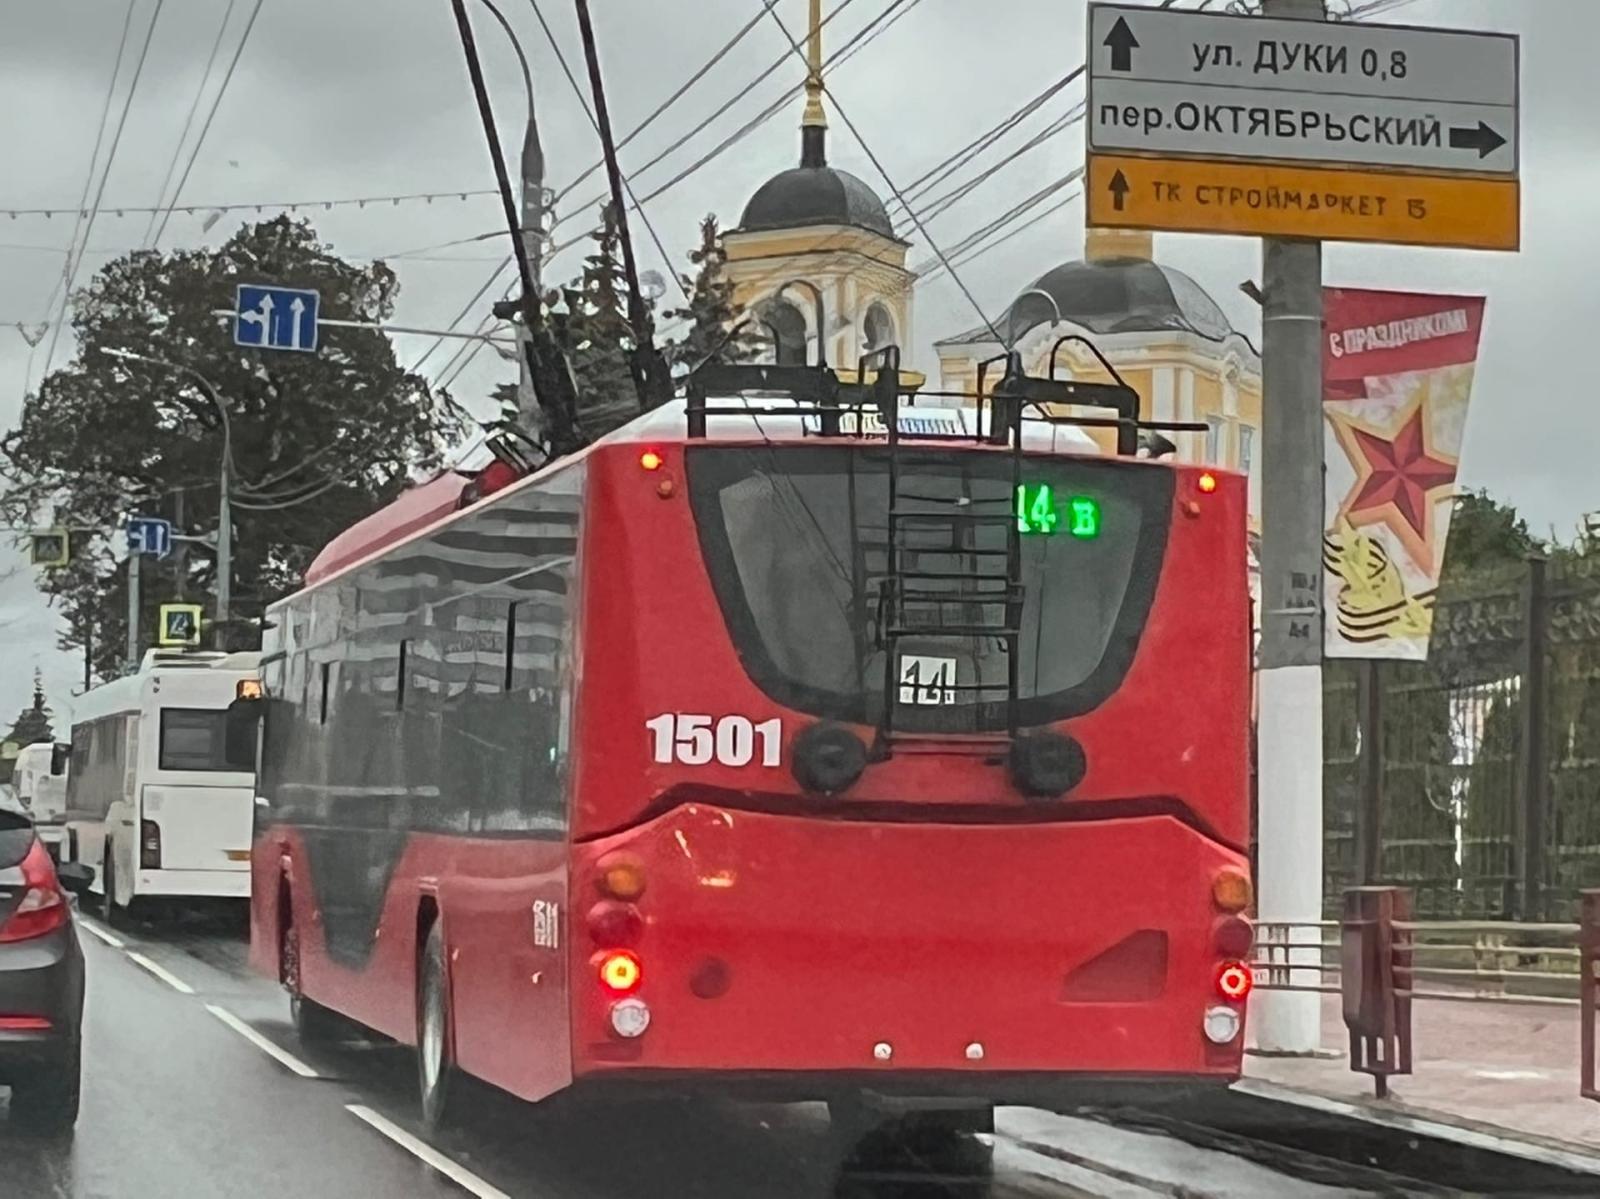 Автотранспортные предприятия Брянска закупили 6 новых троллейбусов